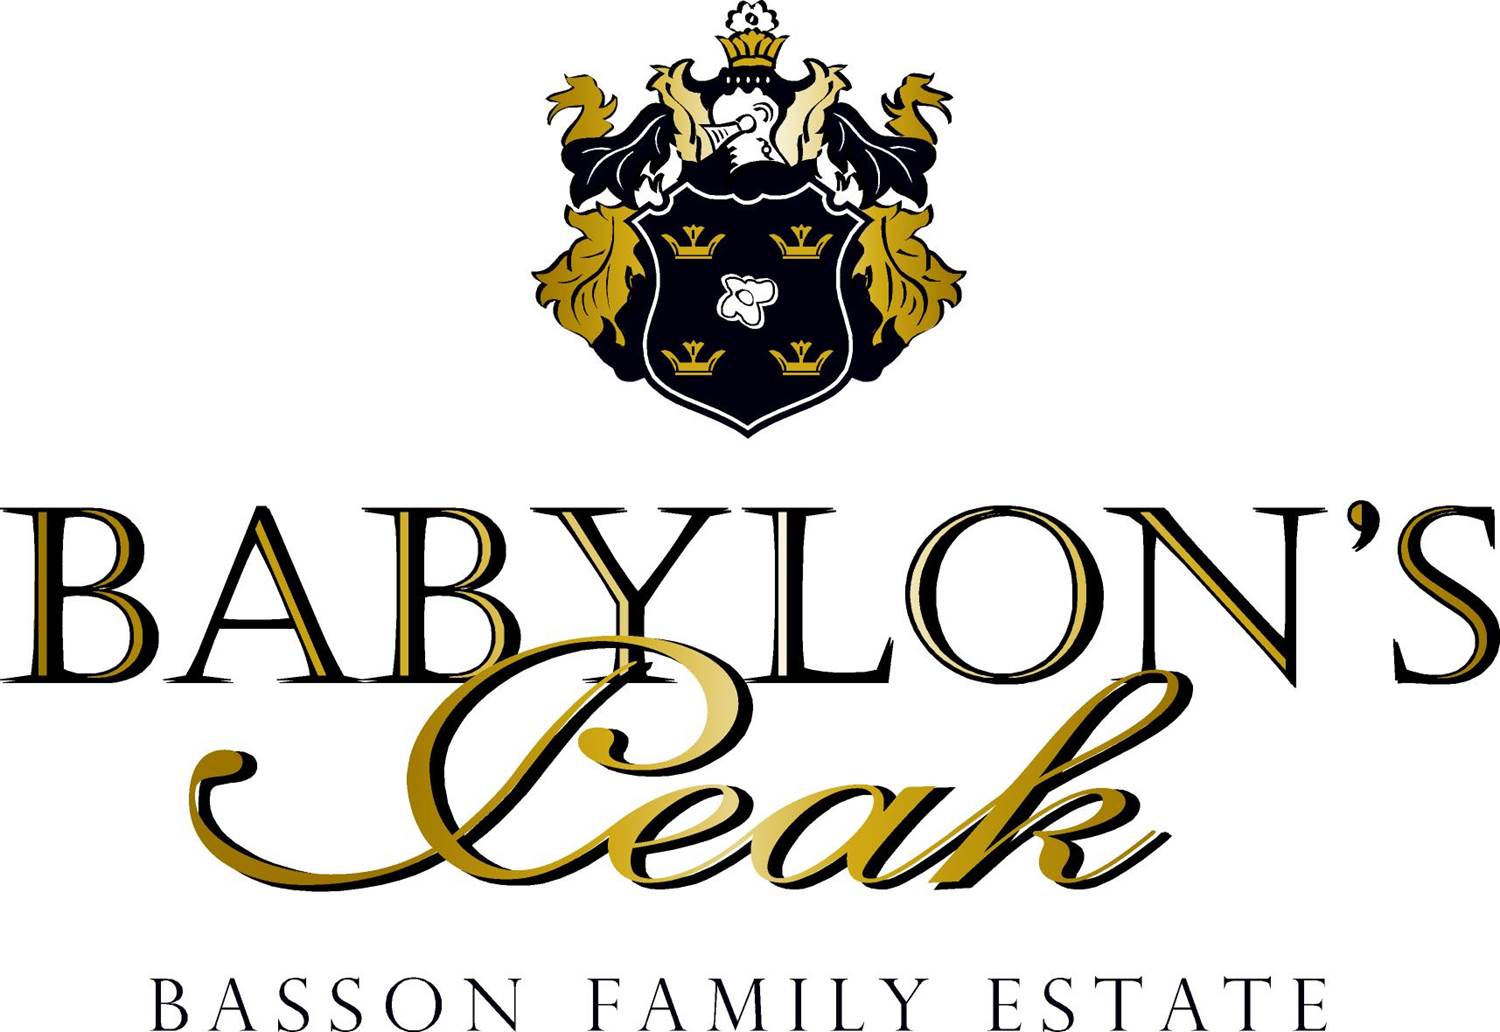 babylon's peak logo.jpg